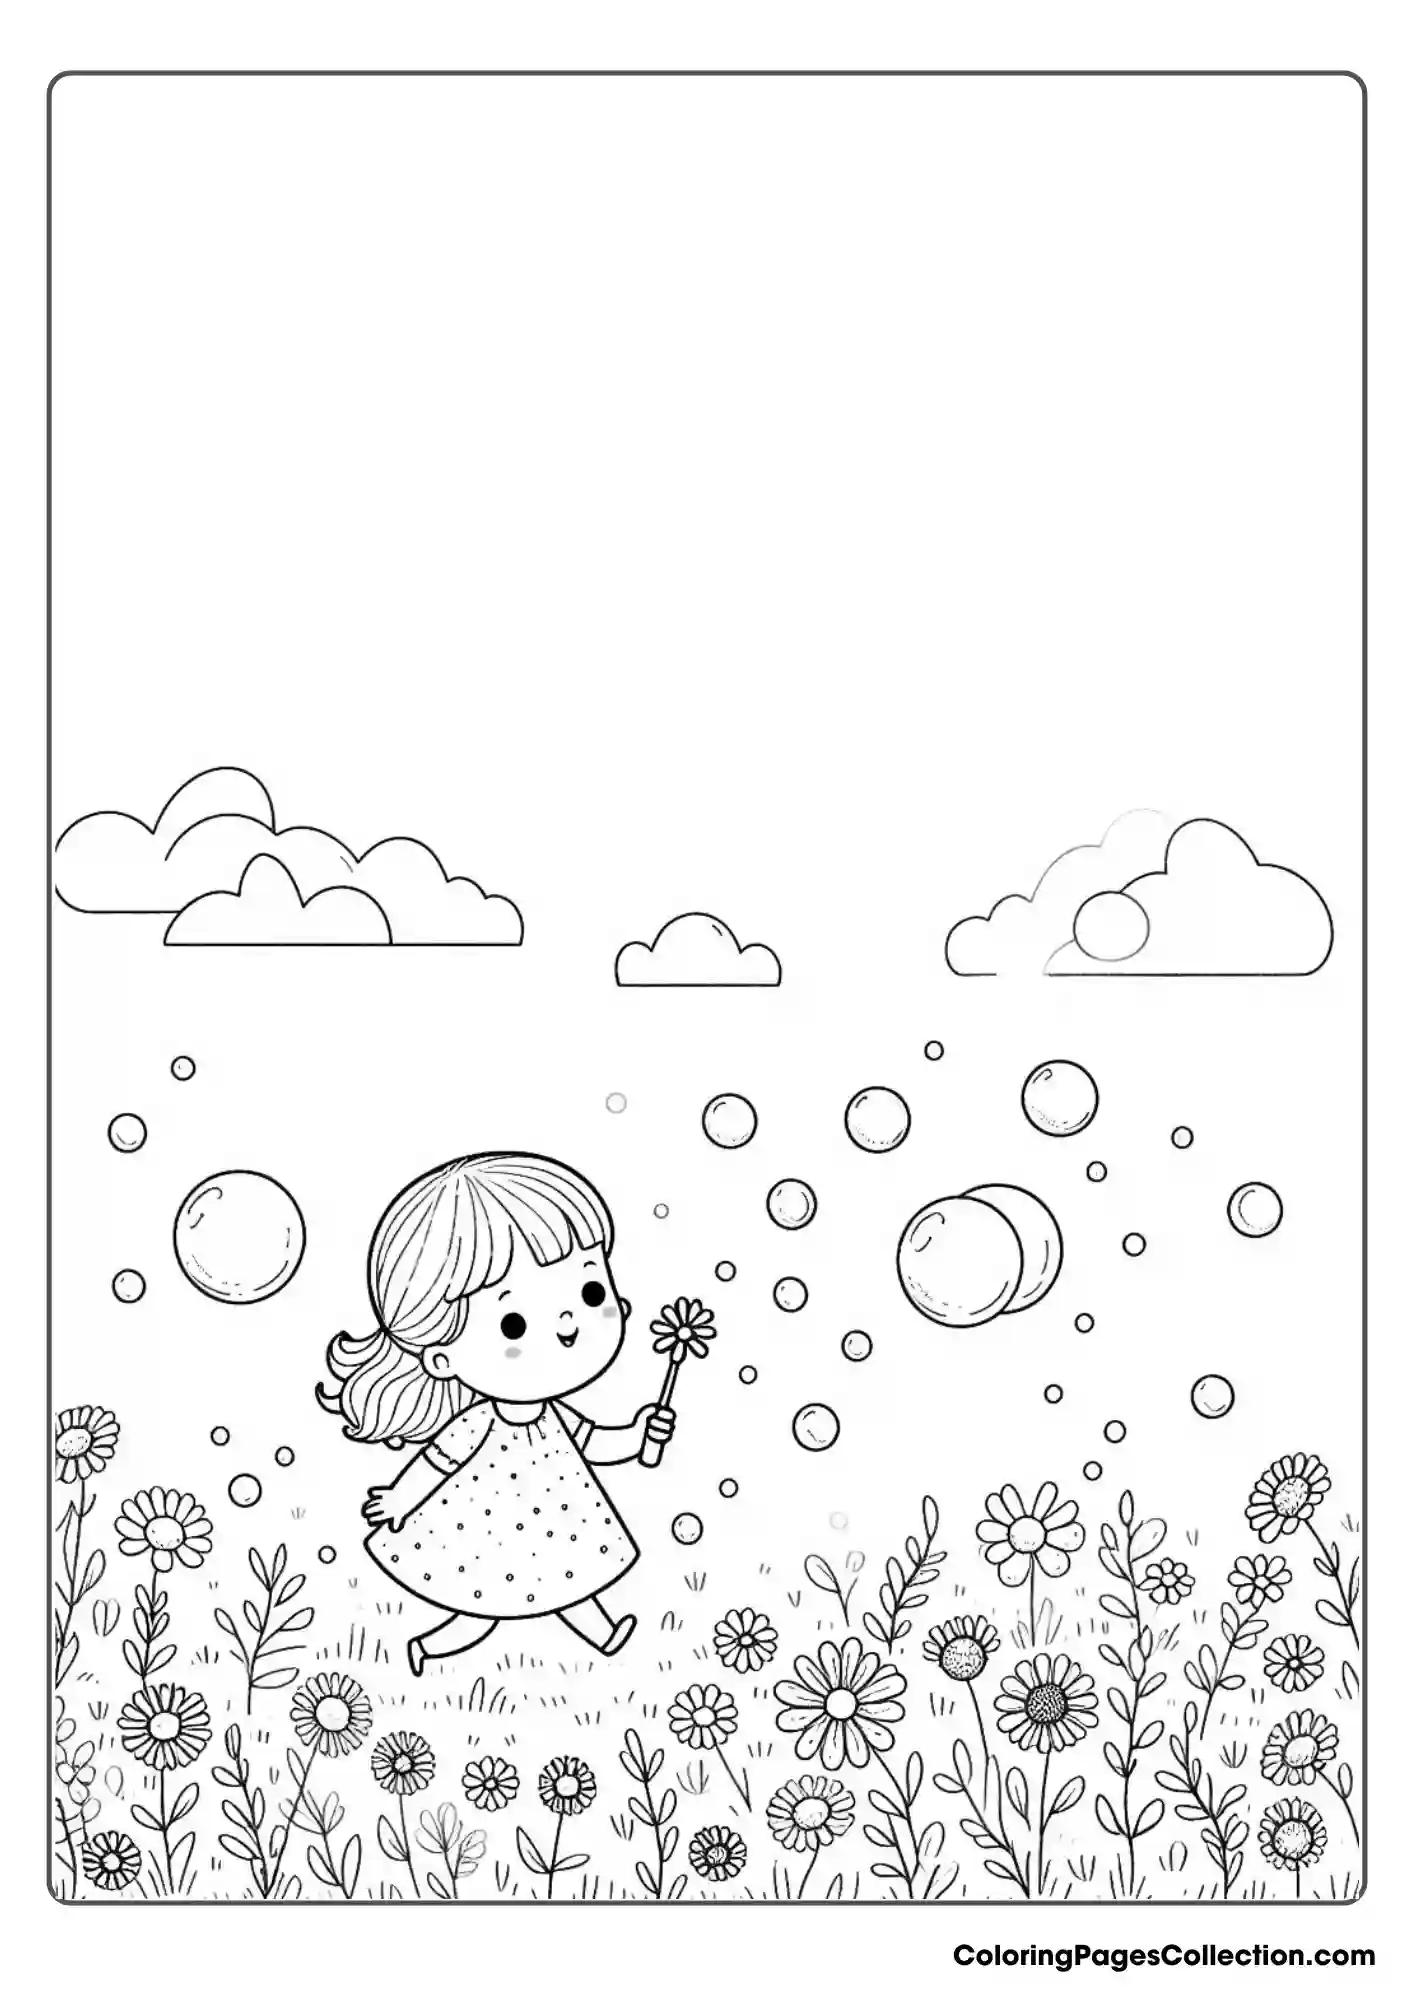 Bubbles In A Field